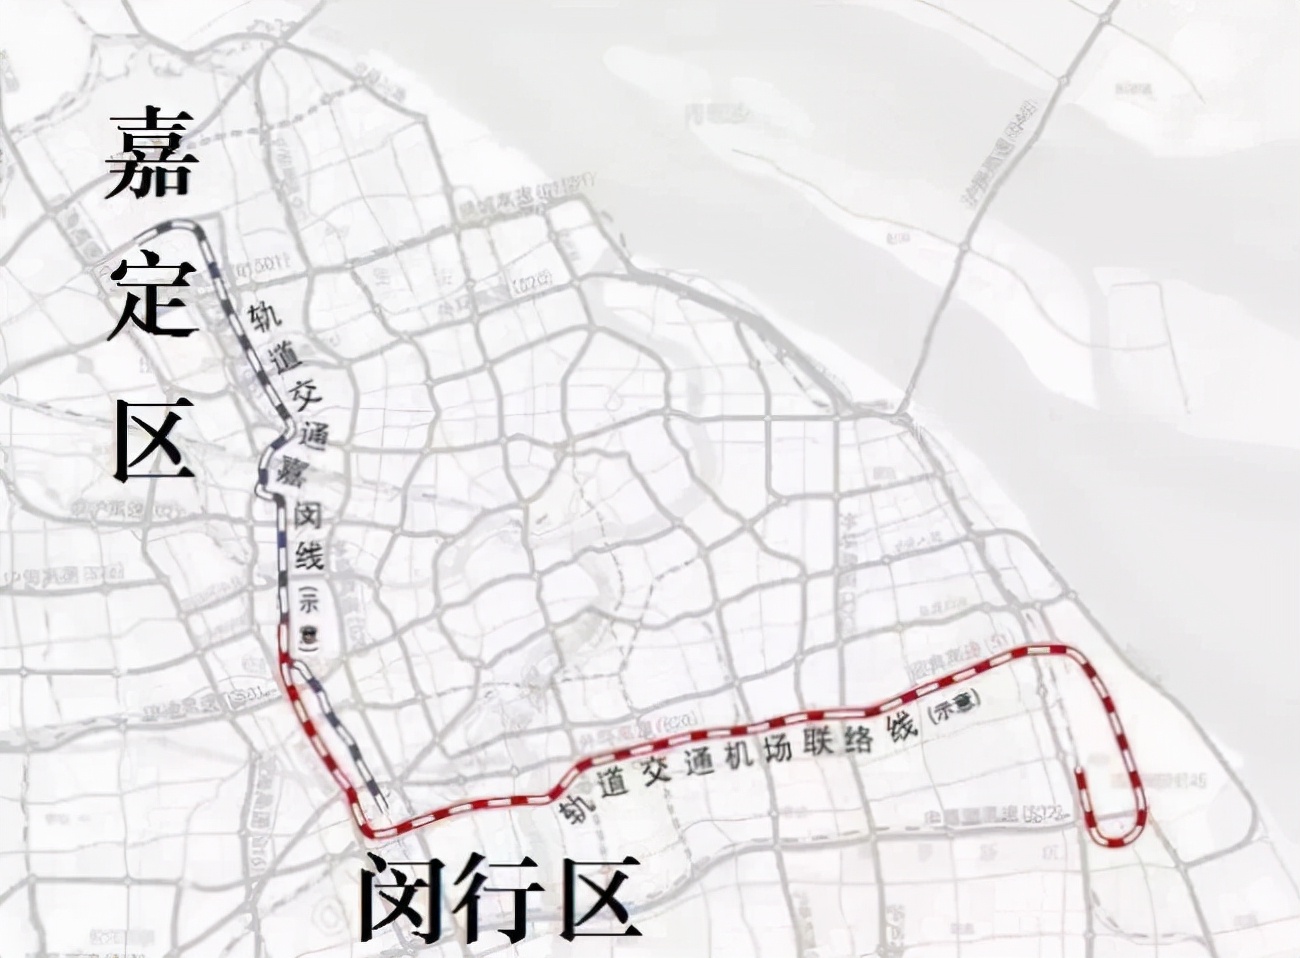 上海轨道交通嘉闵线有何种市域铁路的特性?对长三角的连通有贡献